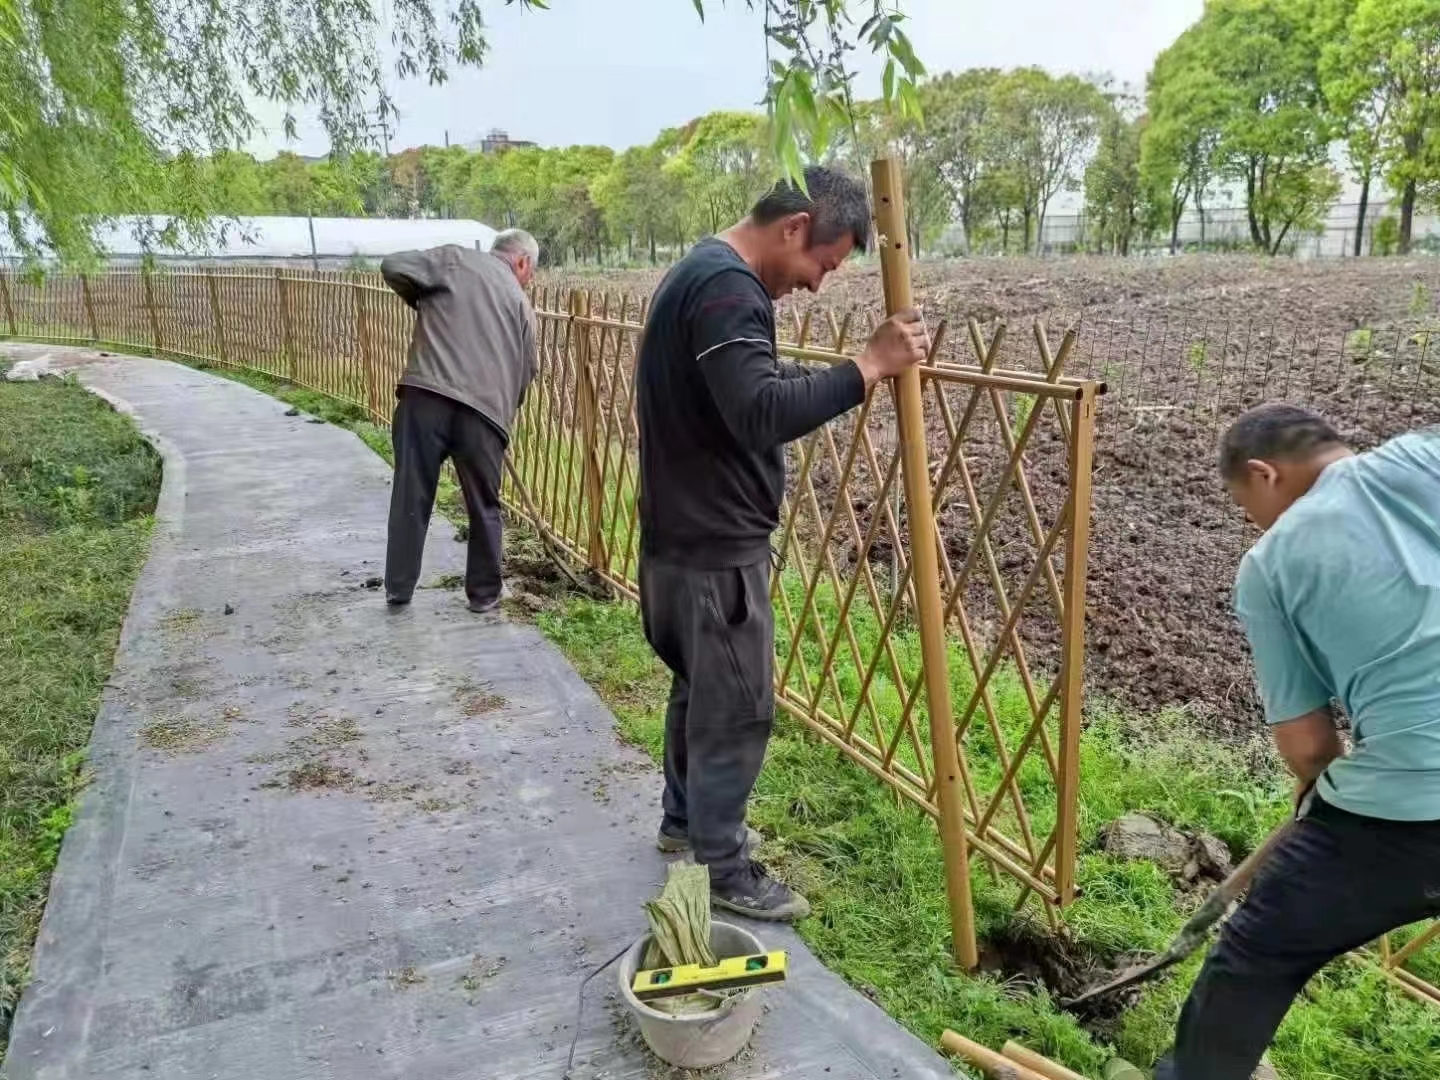 铁岭 竹篱笆 菜园围栏邢台南和仿竹节护栏仿竹护栏